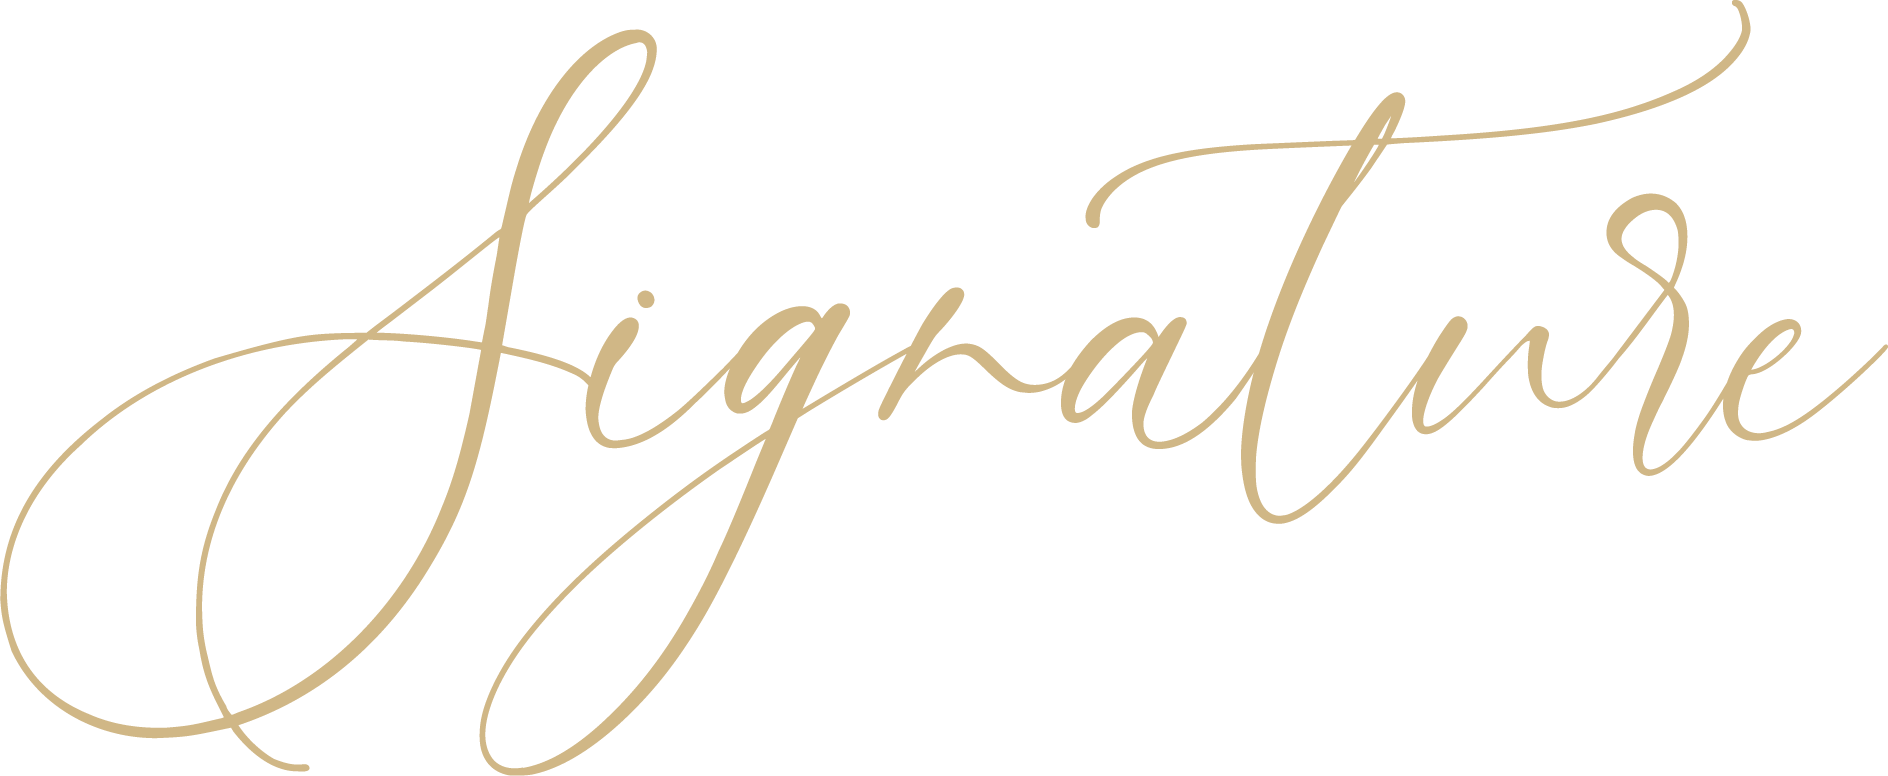 Signature Private